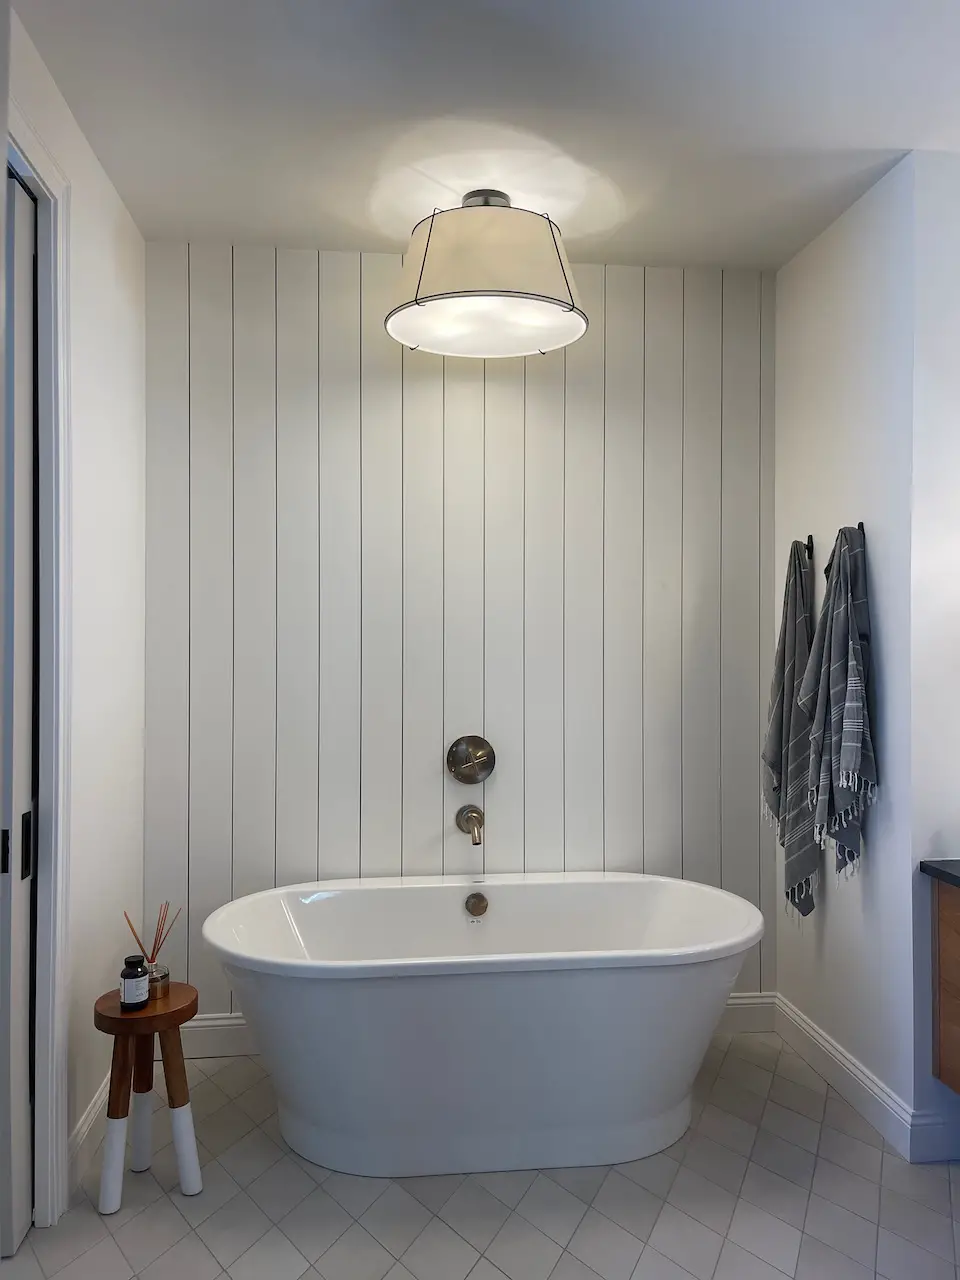 bath tub with shiplap accent wall